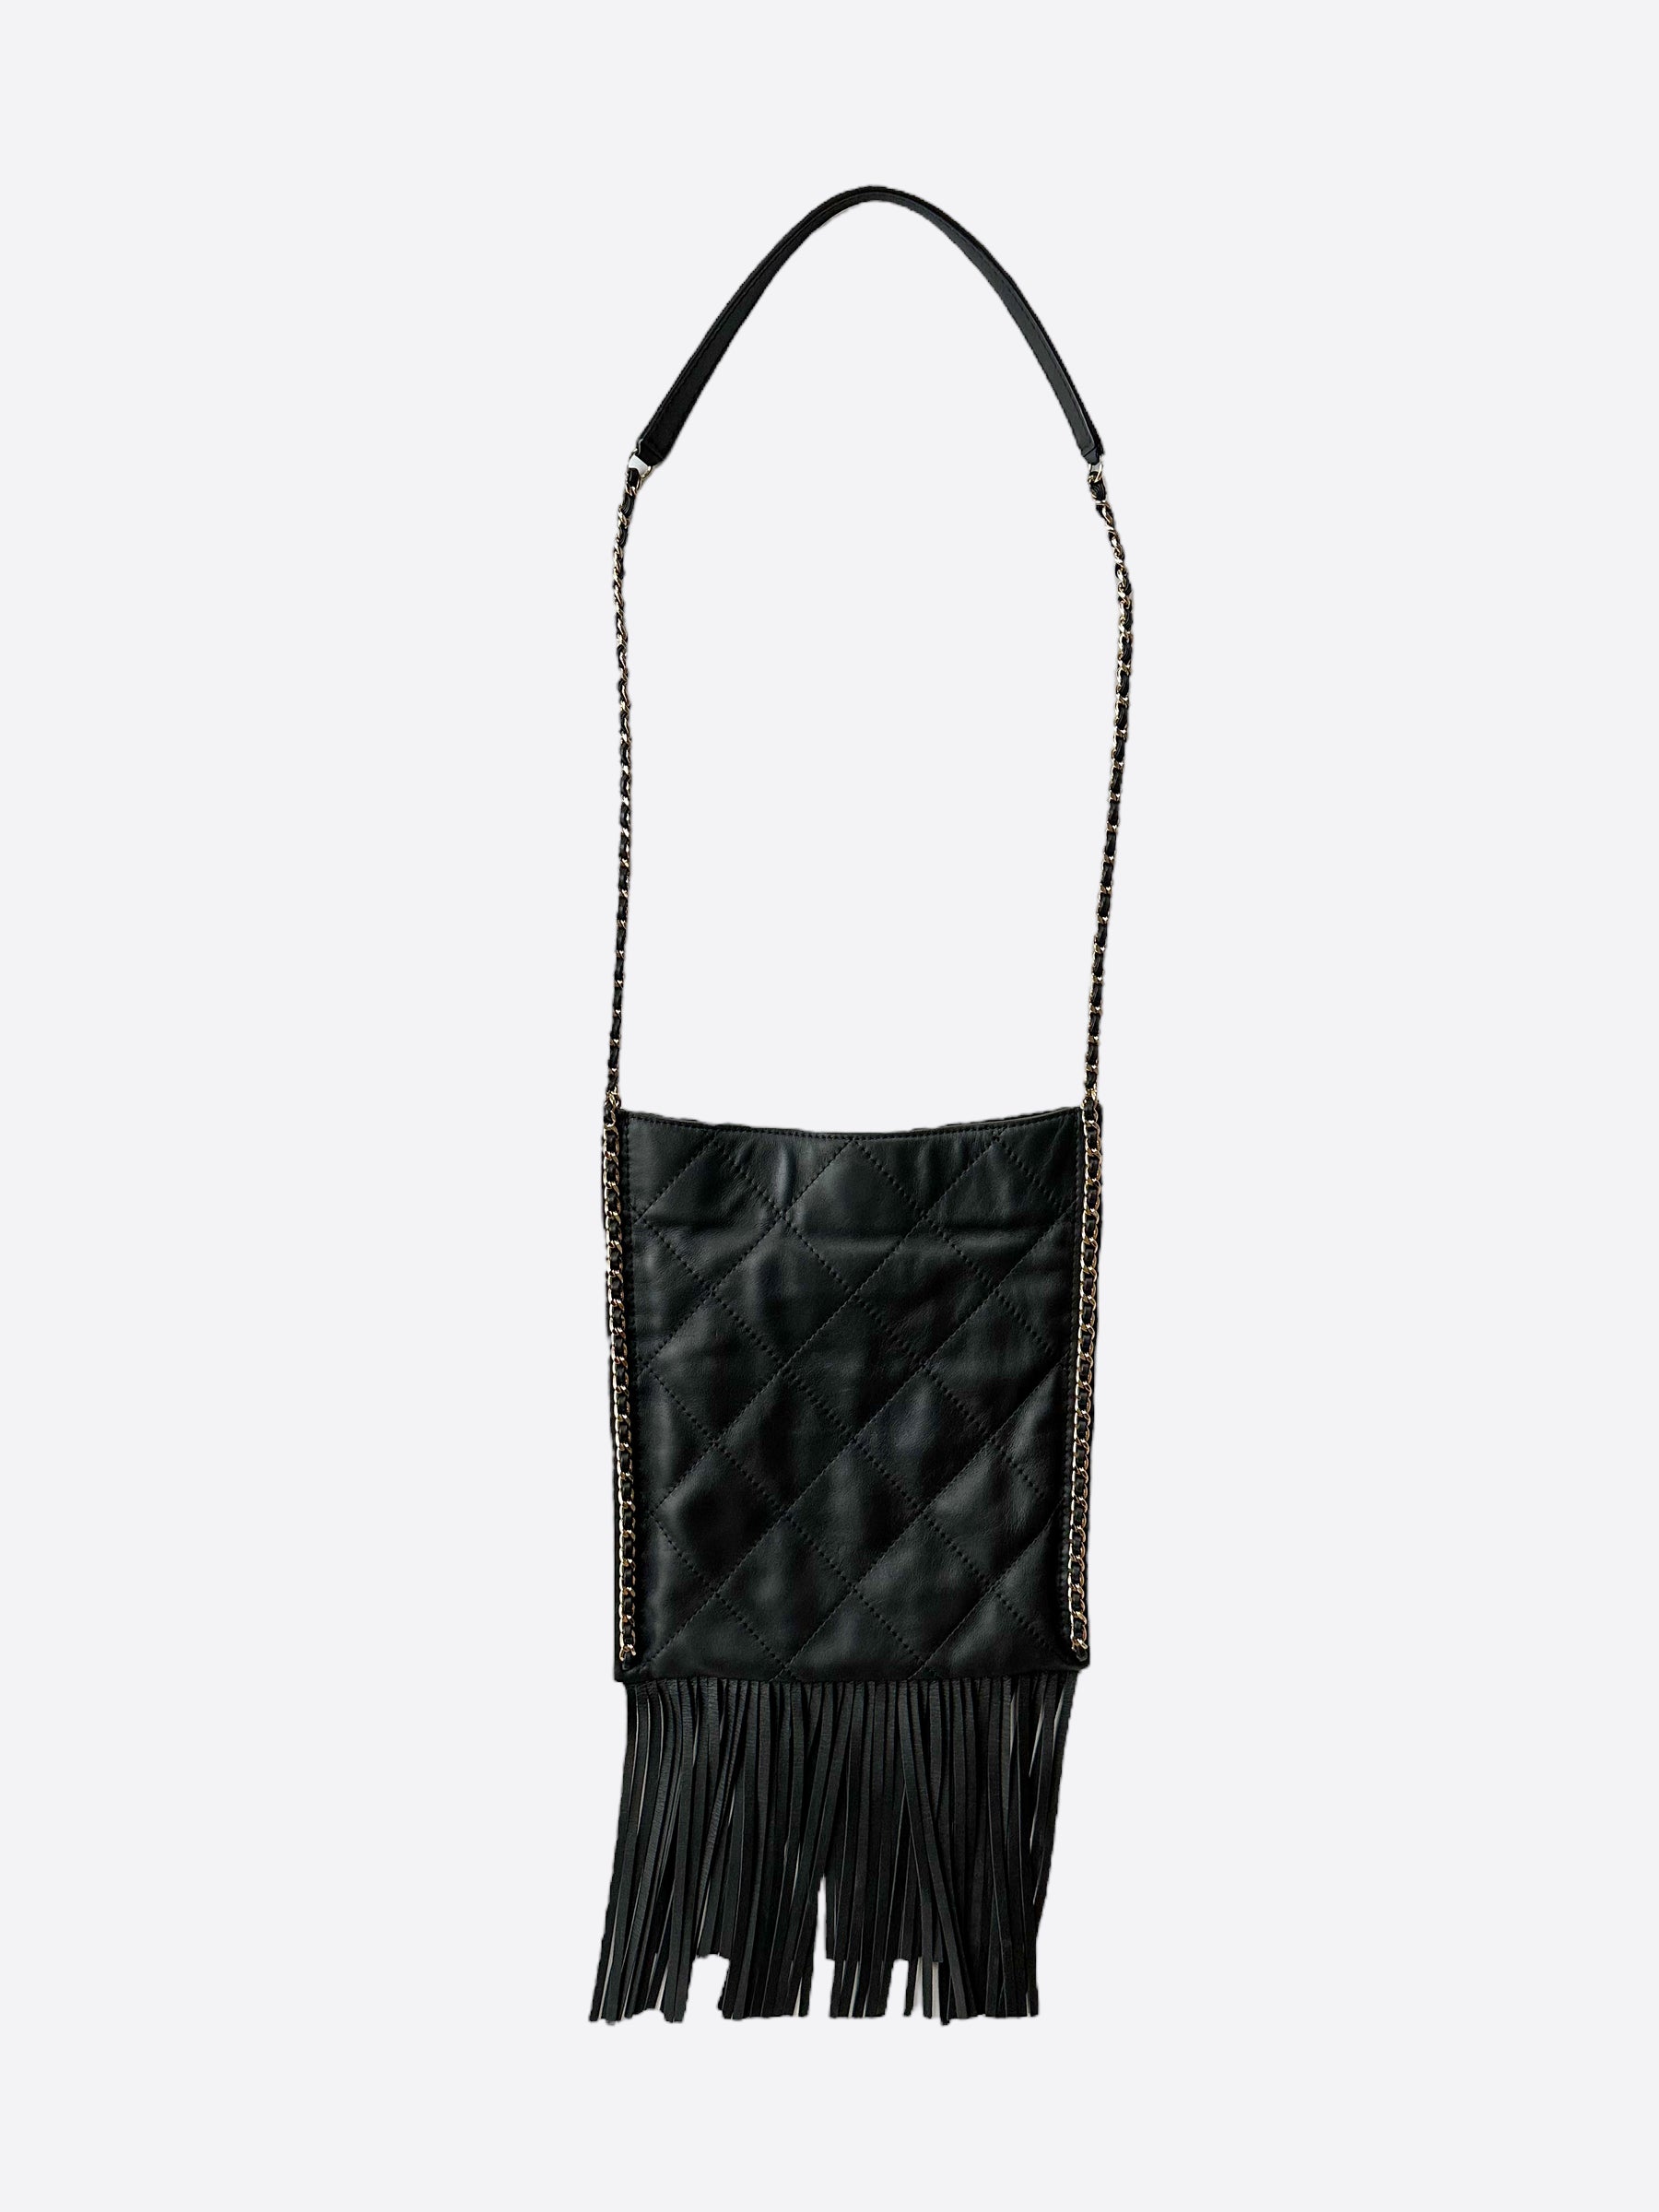 Chanel Quilted Fringe Chain Shoulder Bag Purse Black Lambskin 2446672 68343